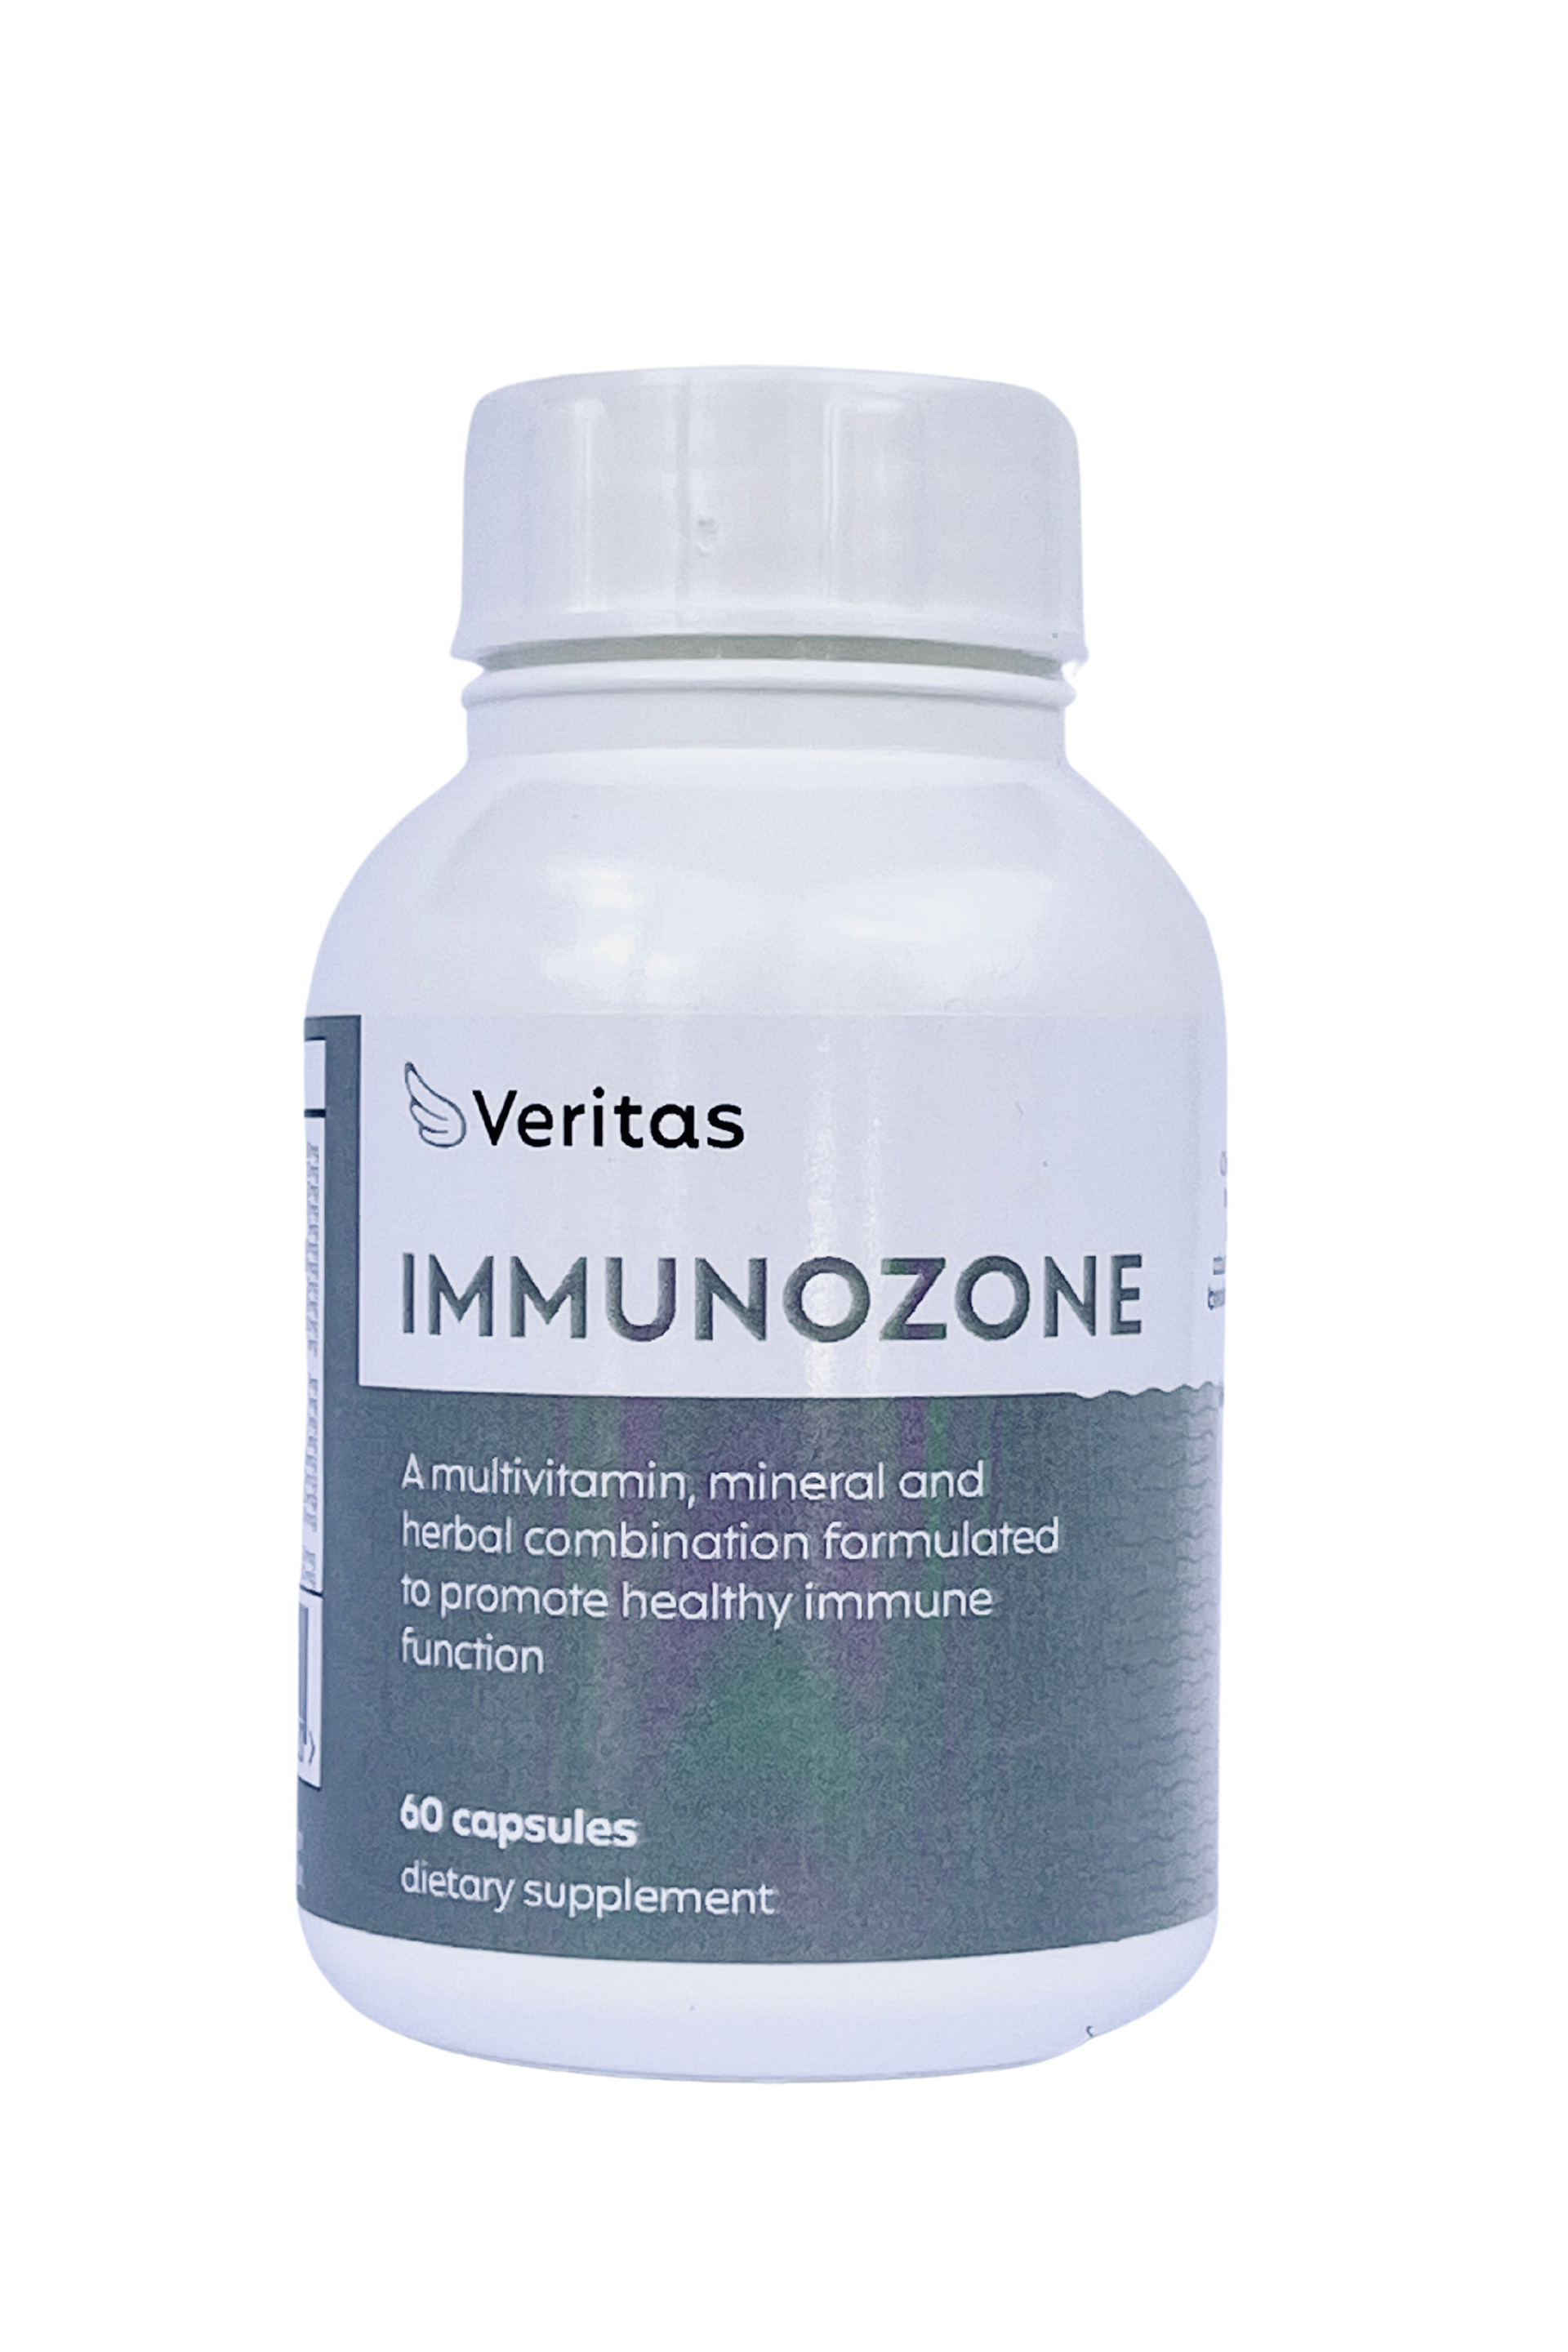 Immunozone